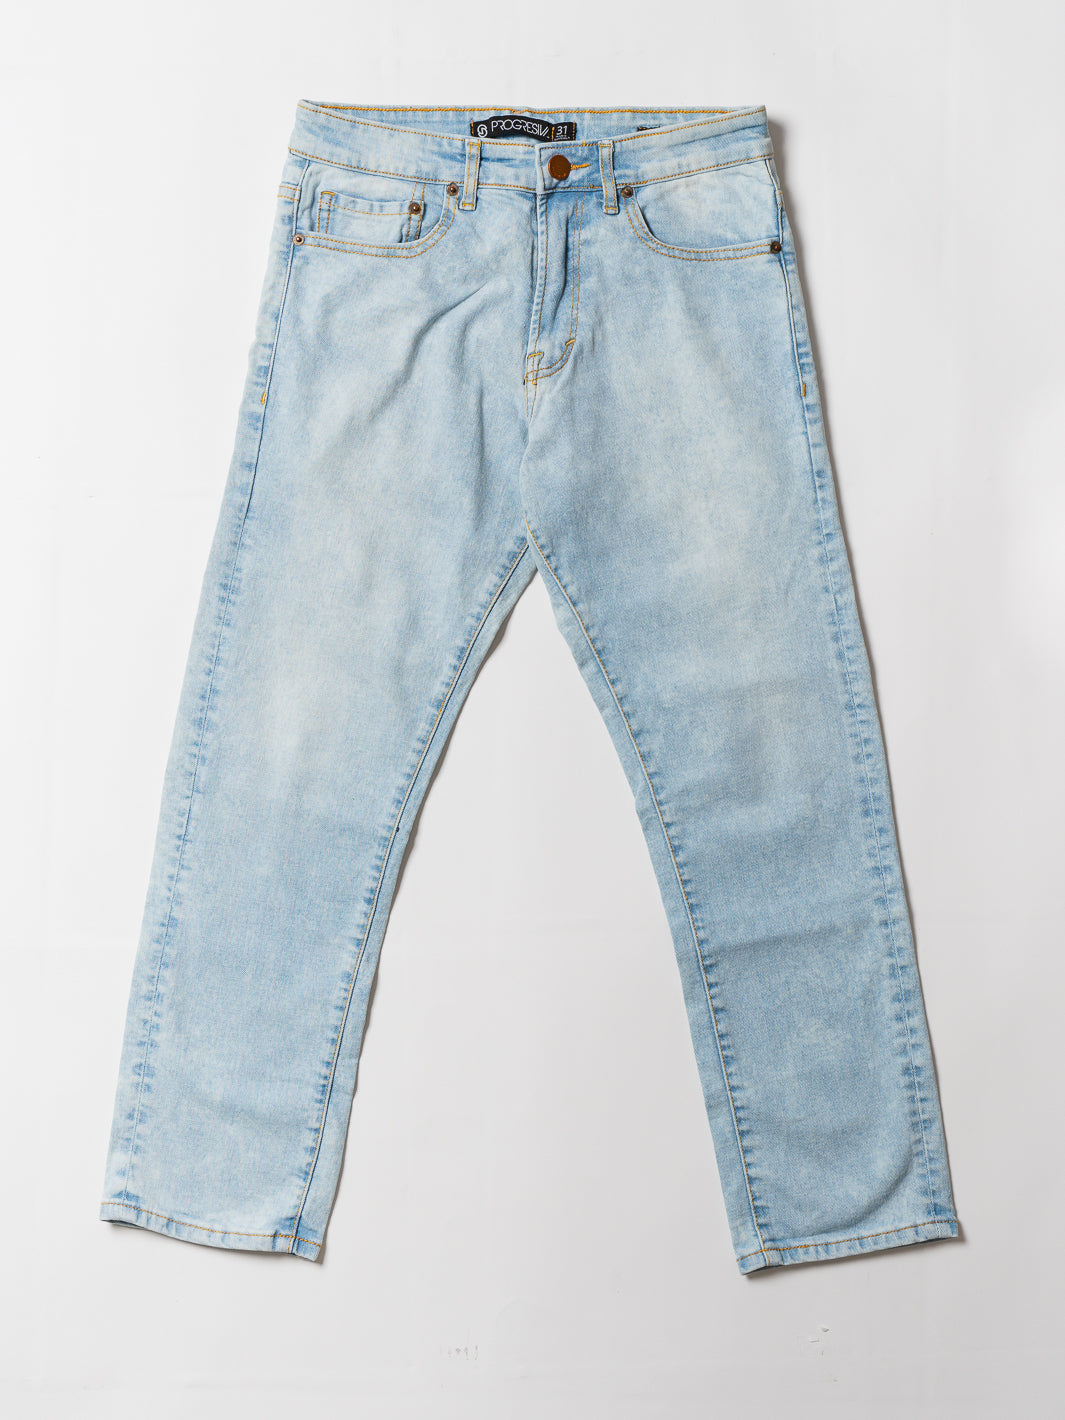 Jeans super denim - CANCUN - recto corto